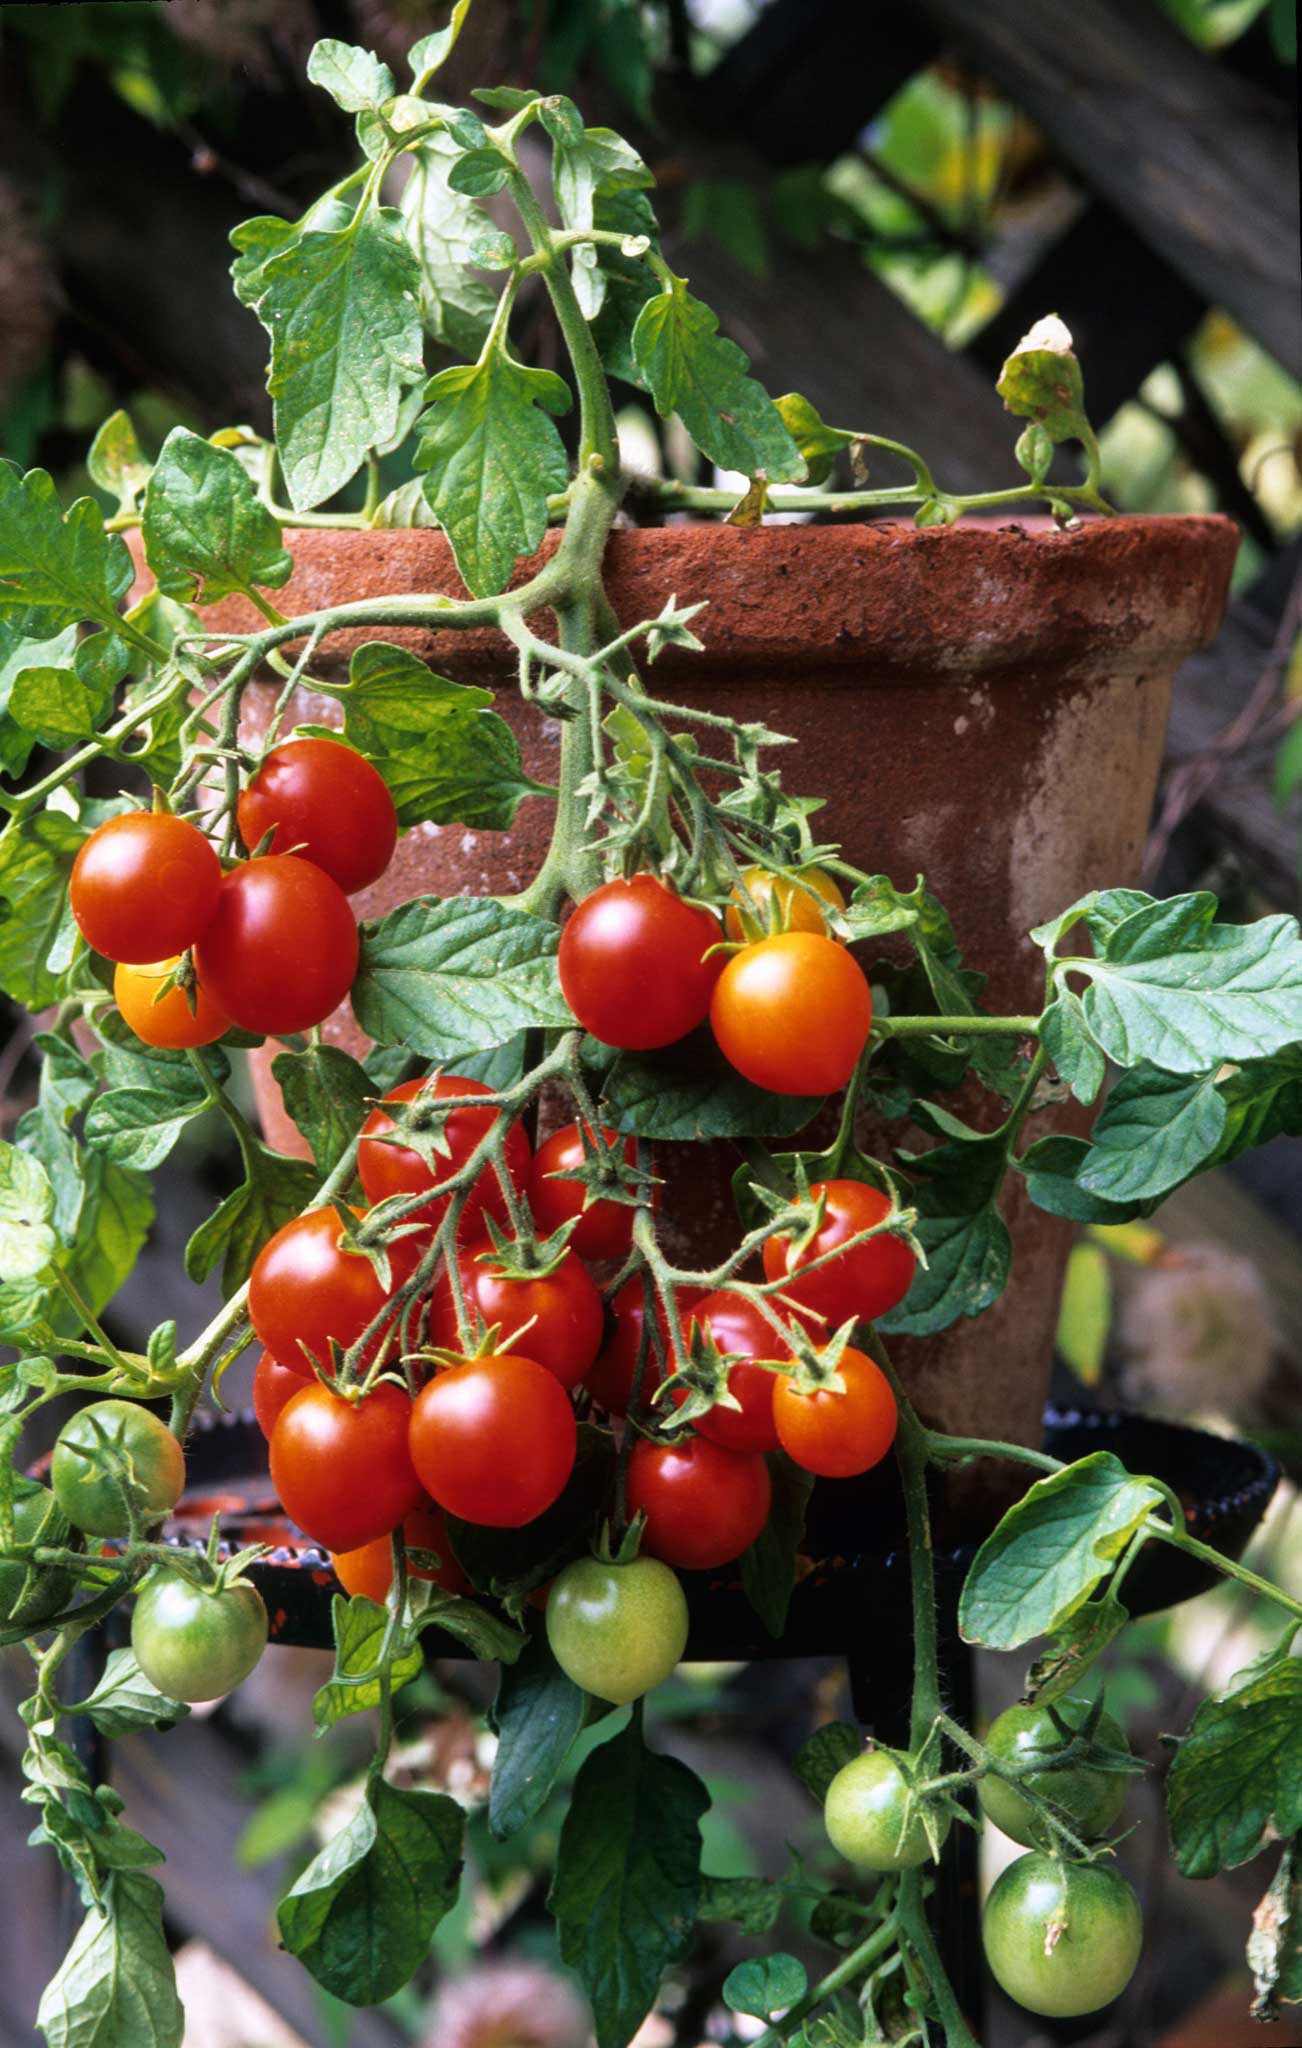 A 'bush' tomato plant flourishing in a pot